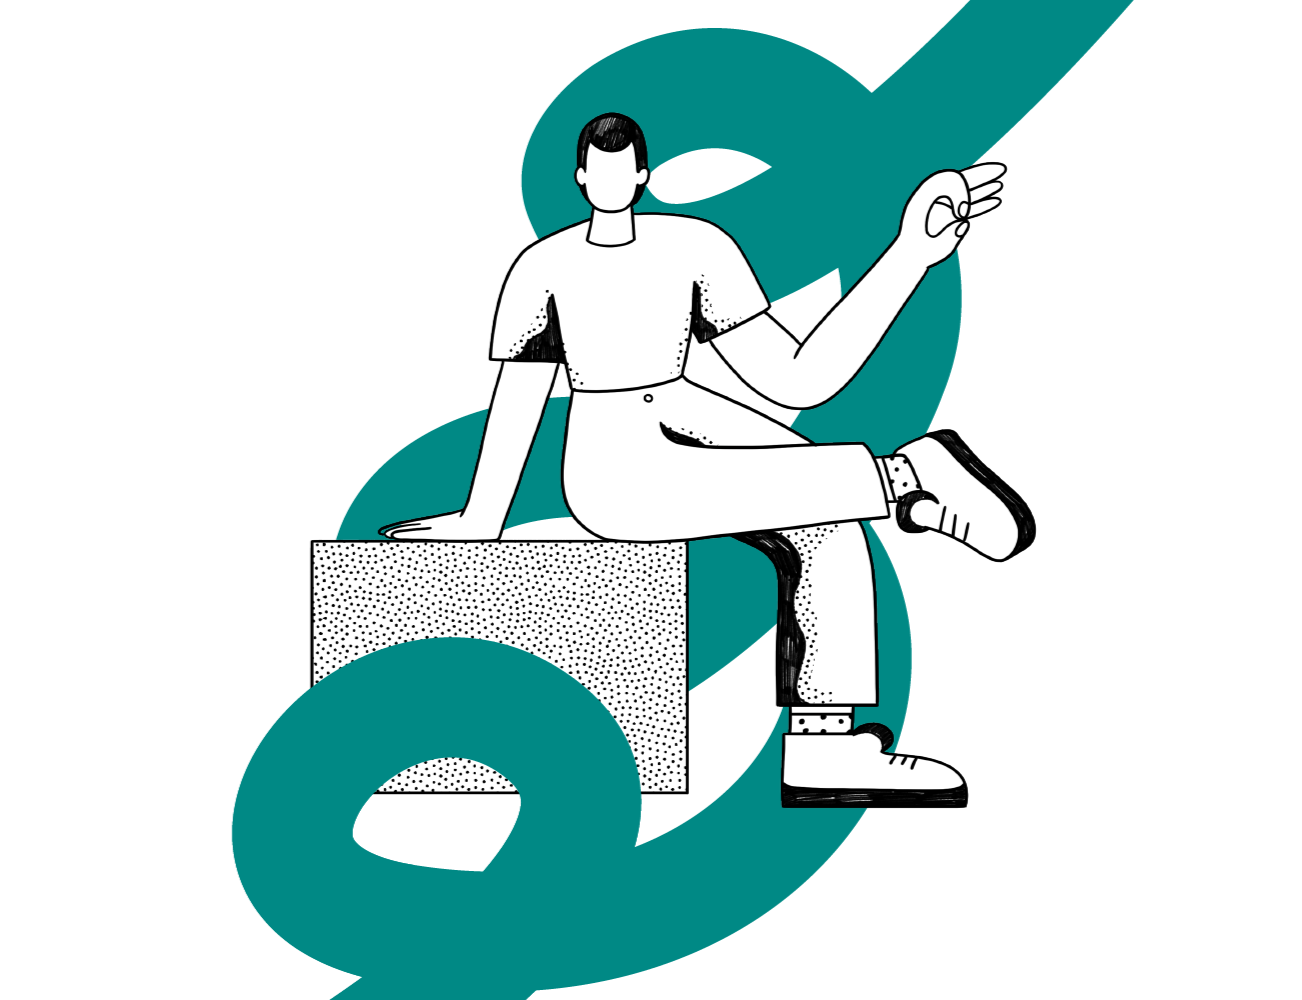 Gráfico del dibujo de una persona sentada en un cubo haciendo el gesto de perfecto con la mano y rodeado por un trazo verde